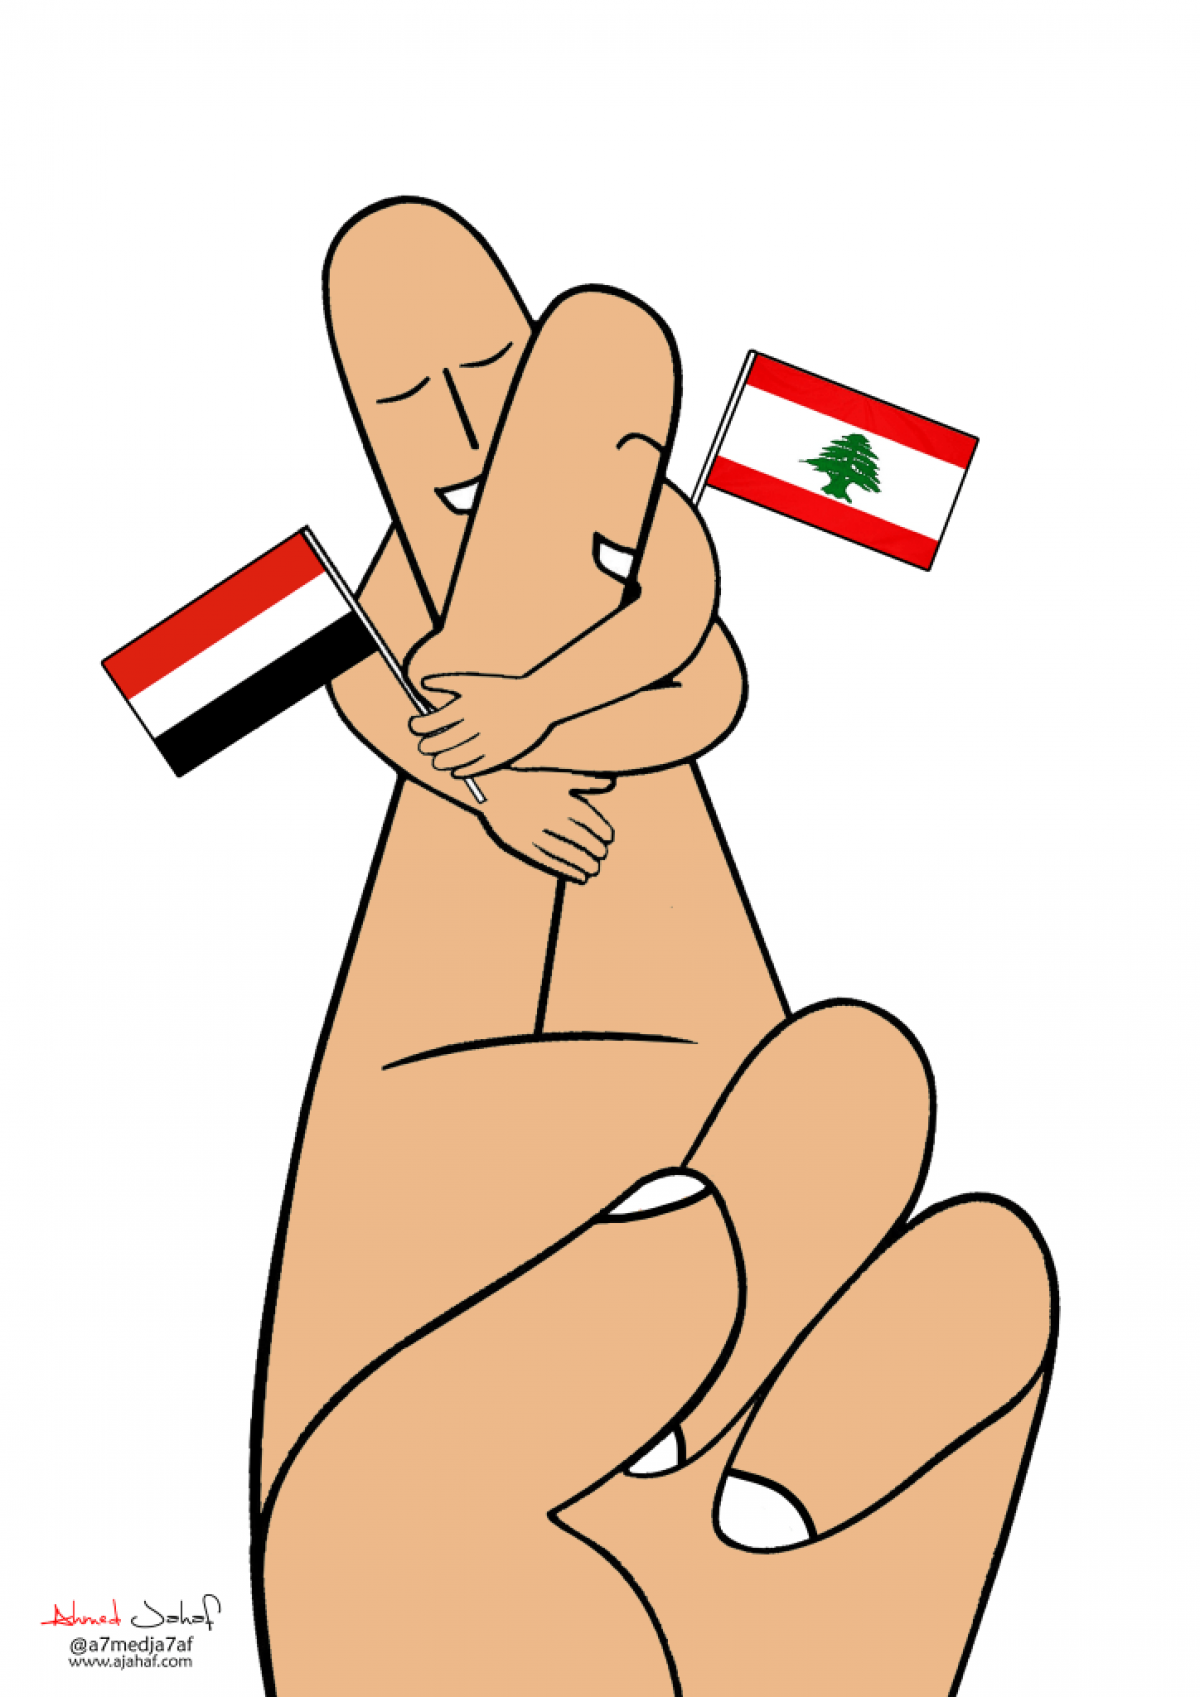 lebanon and yemen